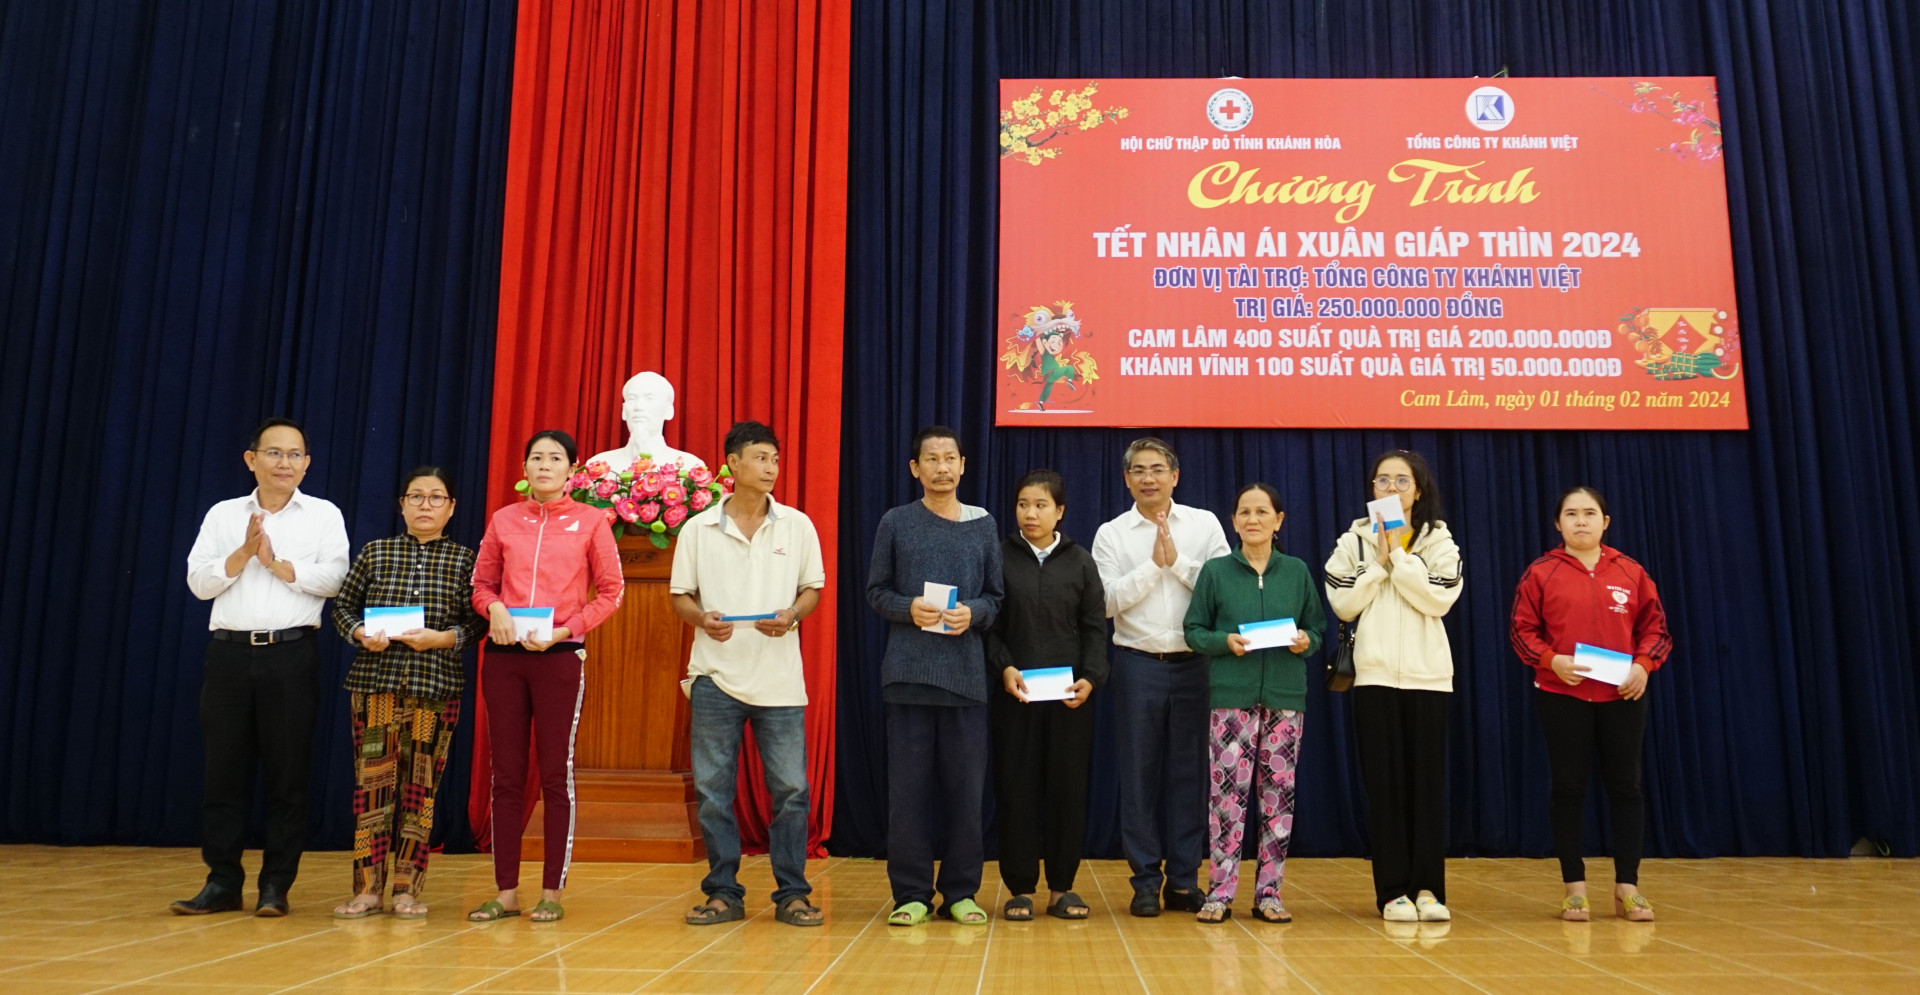 Lãnh đạo Huyện ủy Cam Lâm và đại diện Tổng công ty Khánh Việt trao quà cho người dân